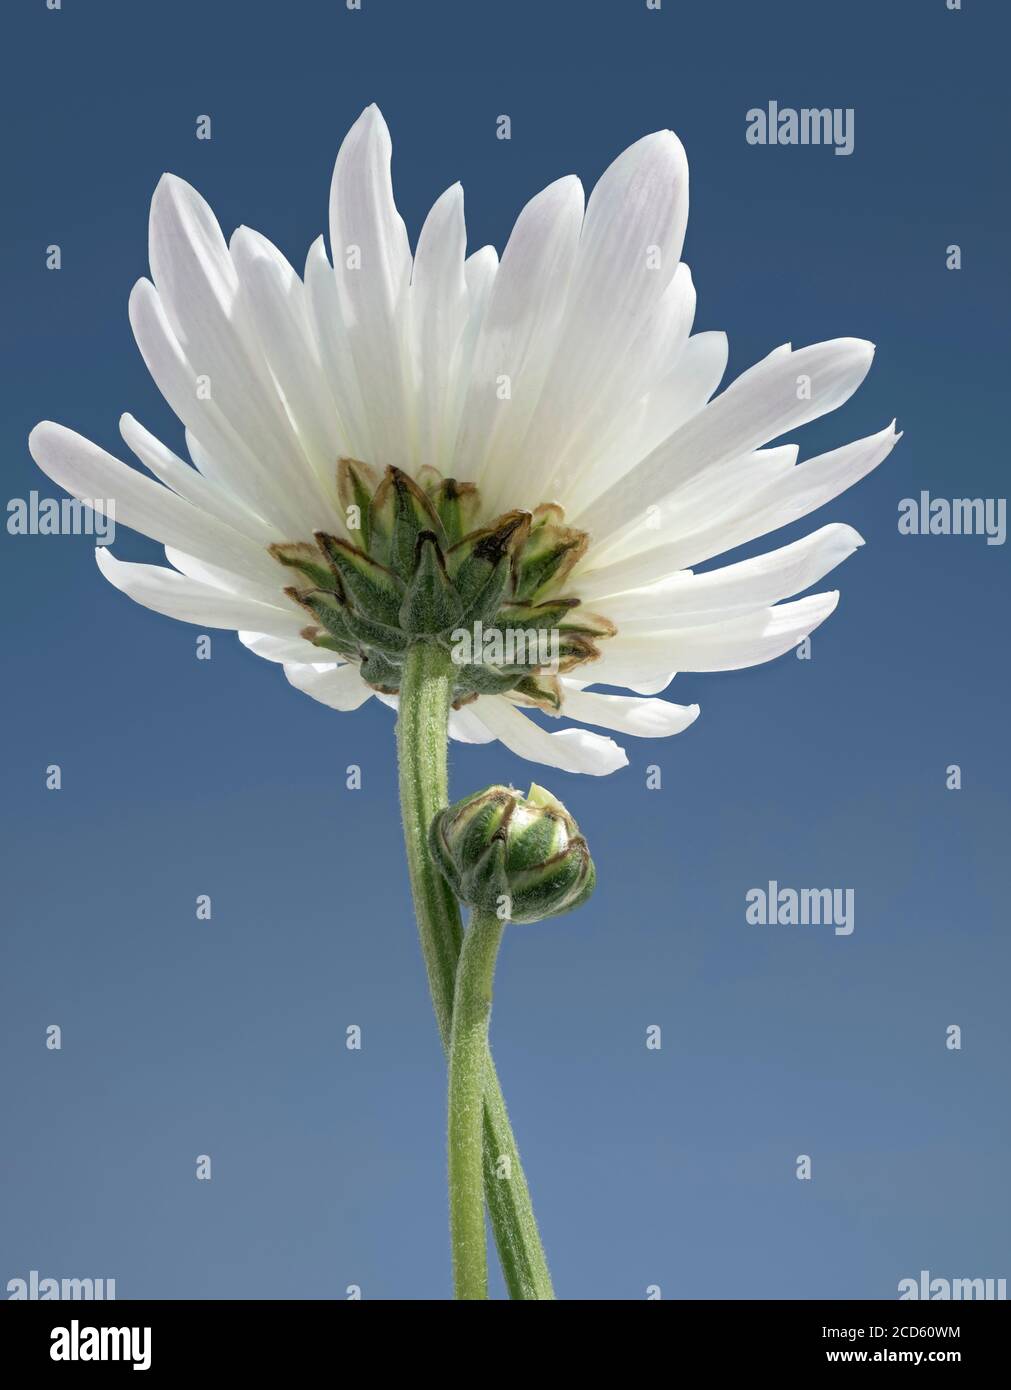 Close-up of white chrysanthemum flower Stock Photo